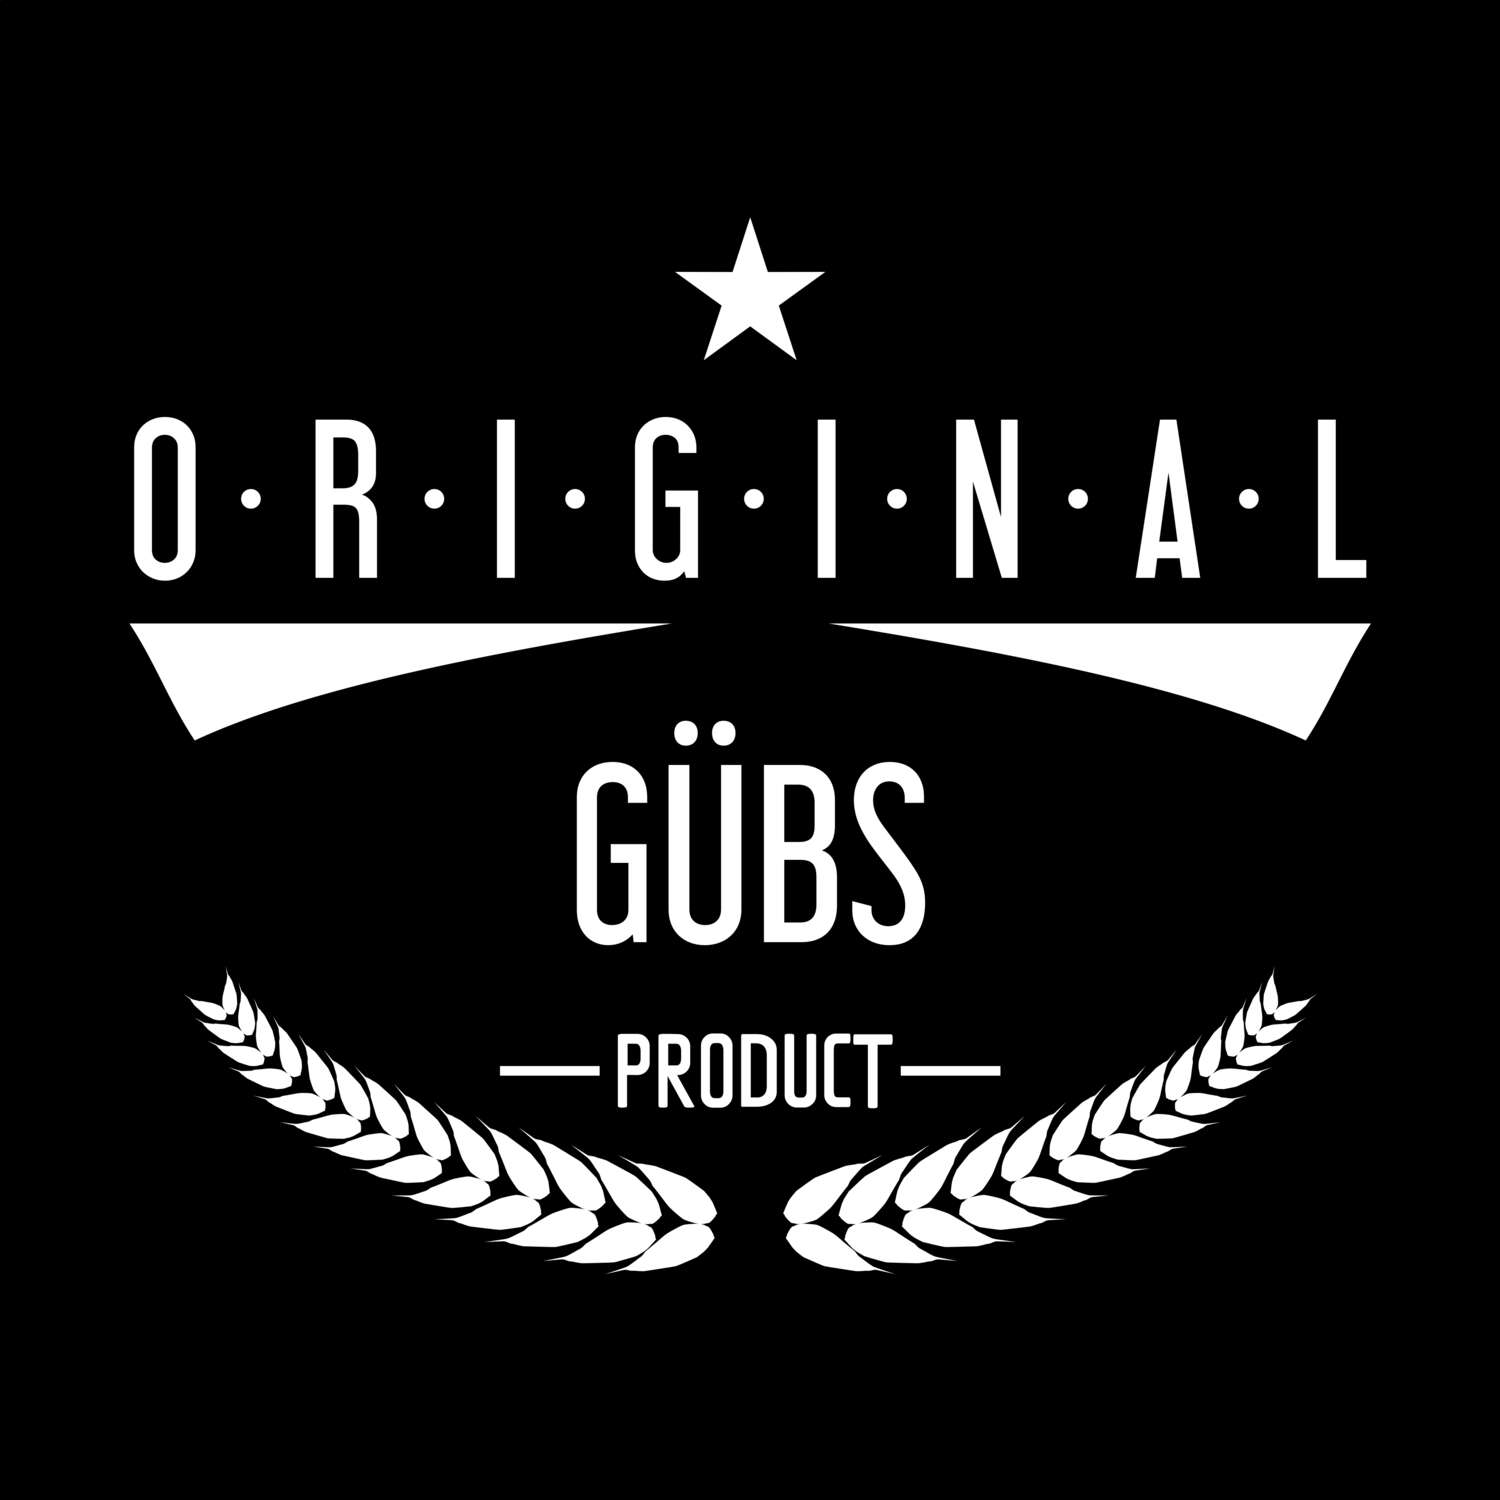 Gübs T-Shirt »Original Product«